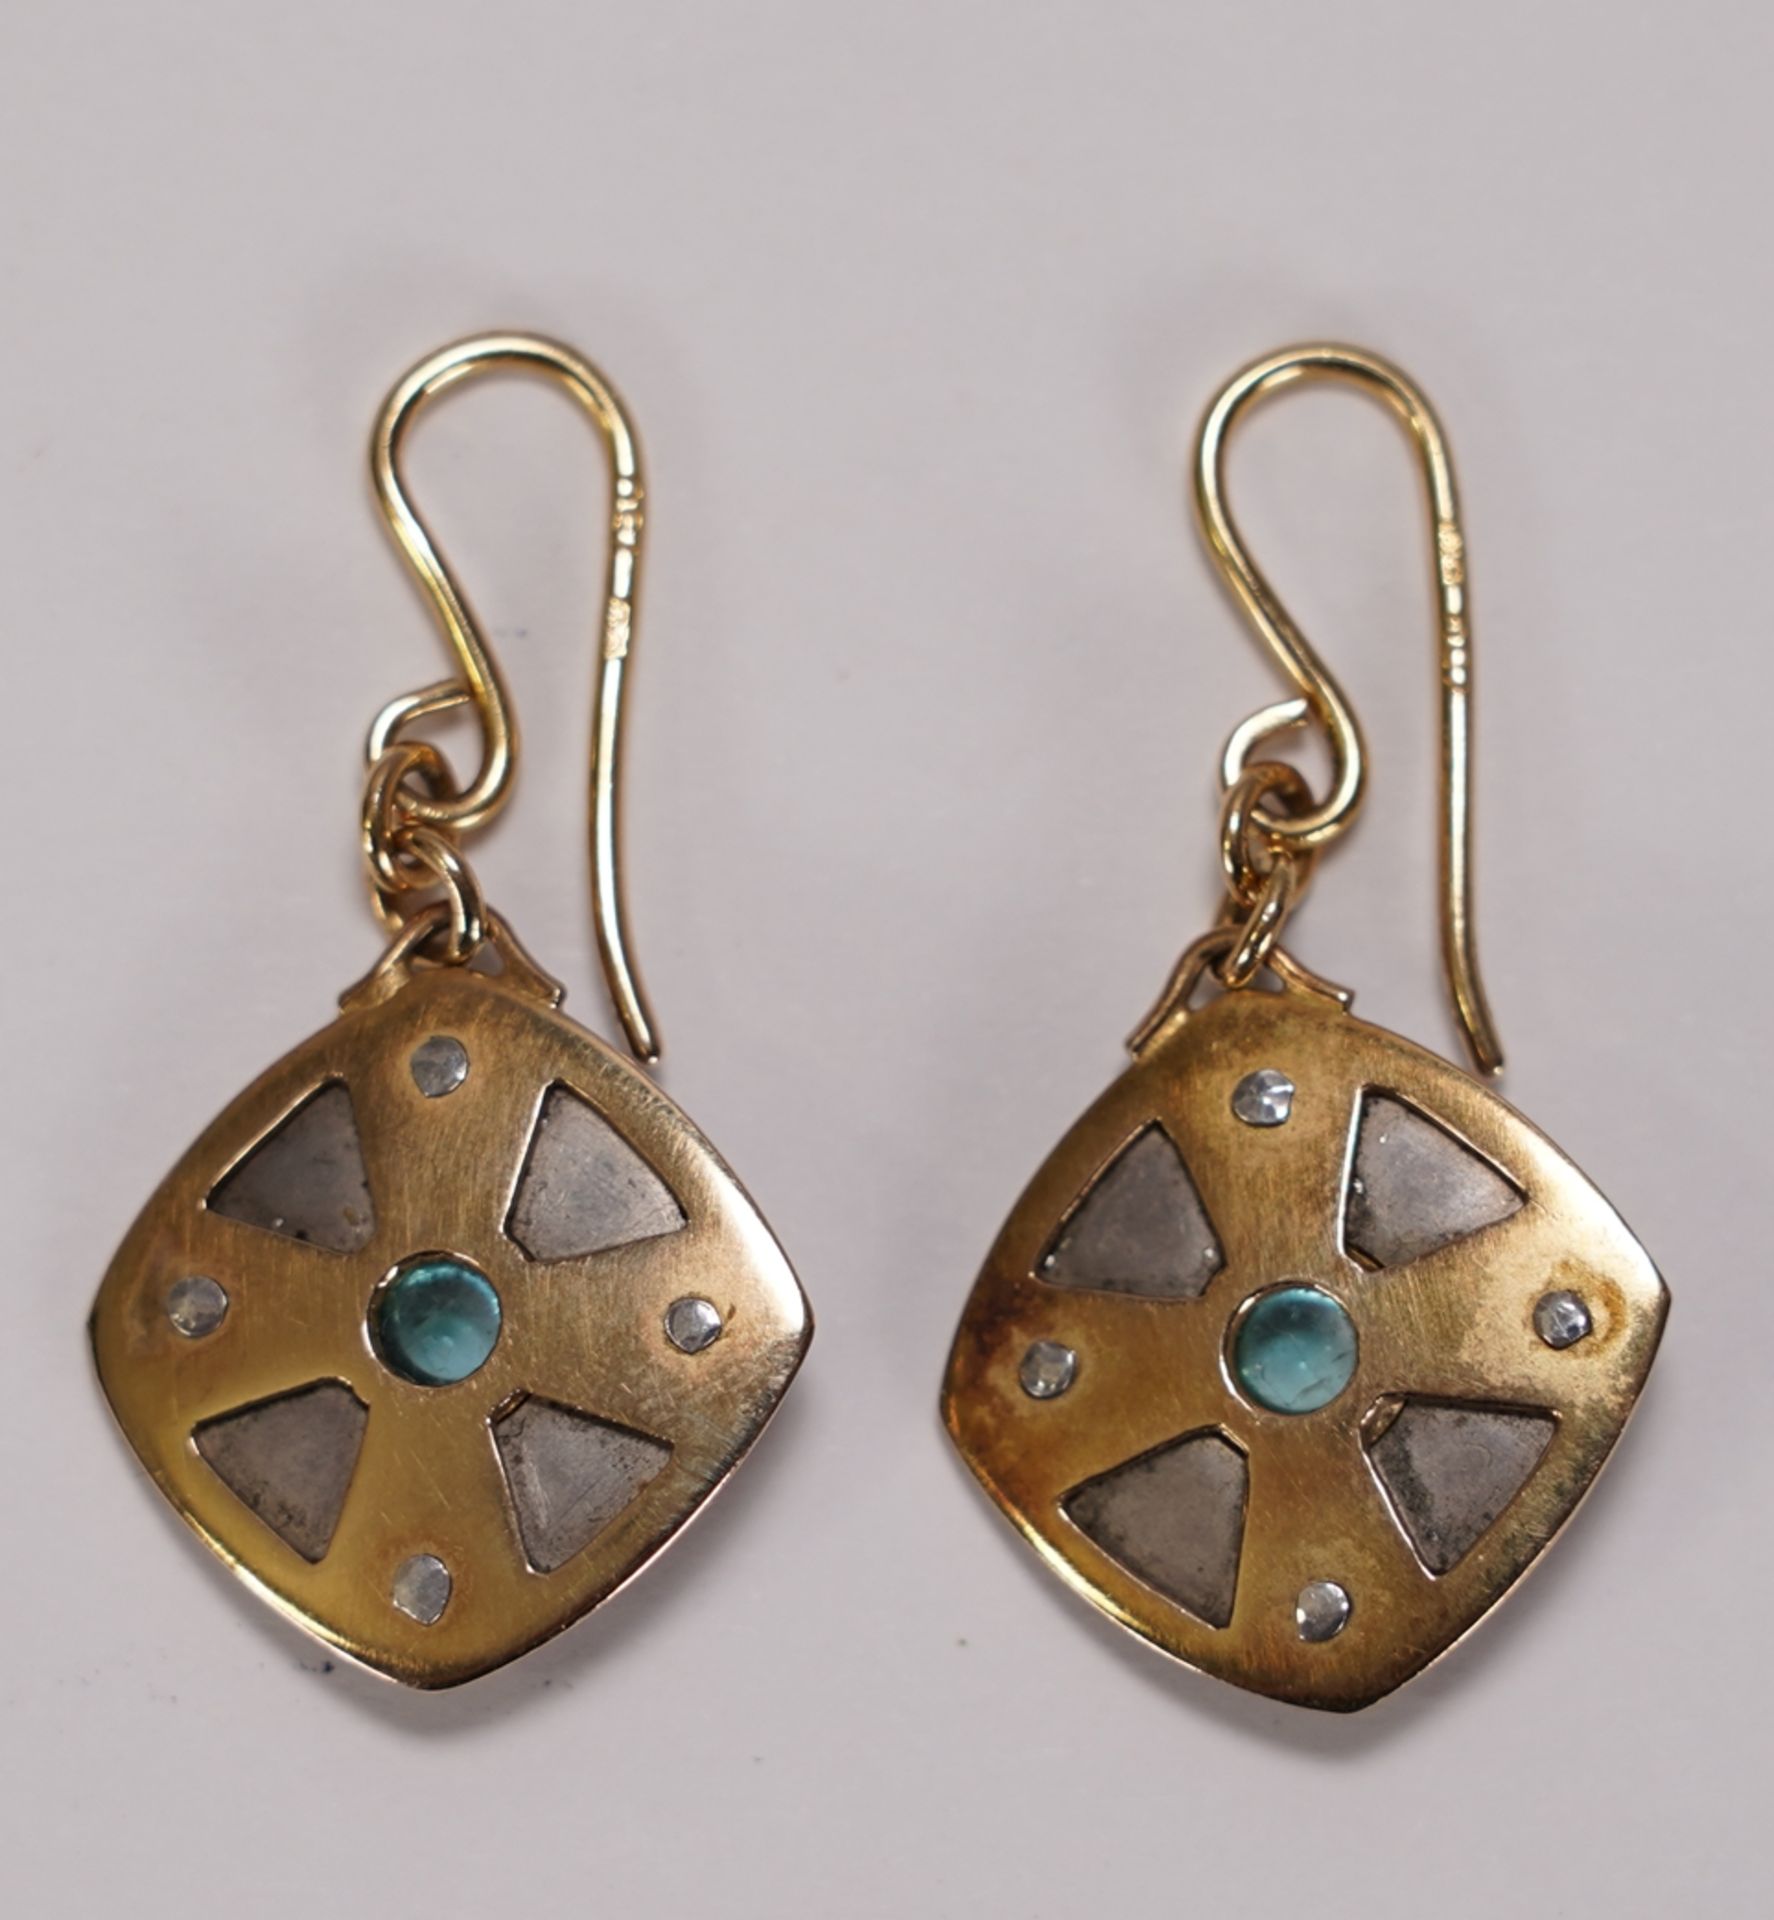 Pair of earrings - Image 2 of 2